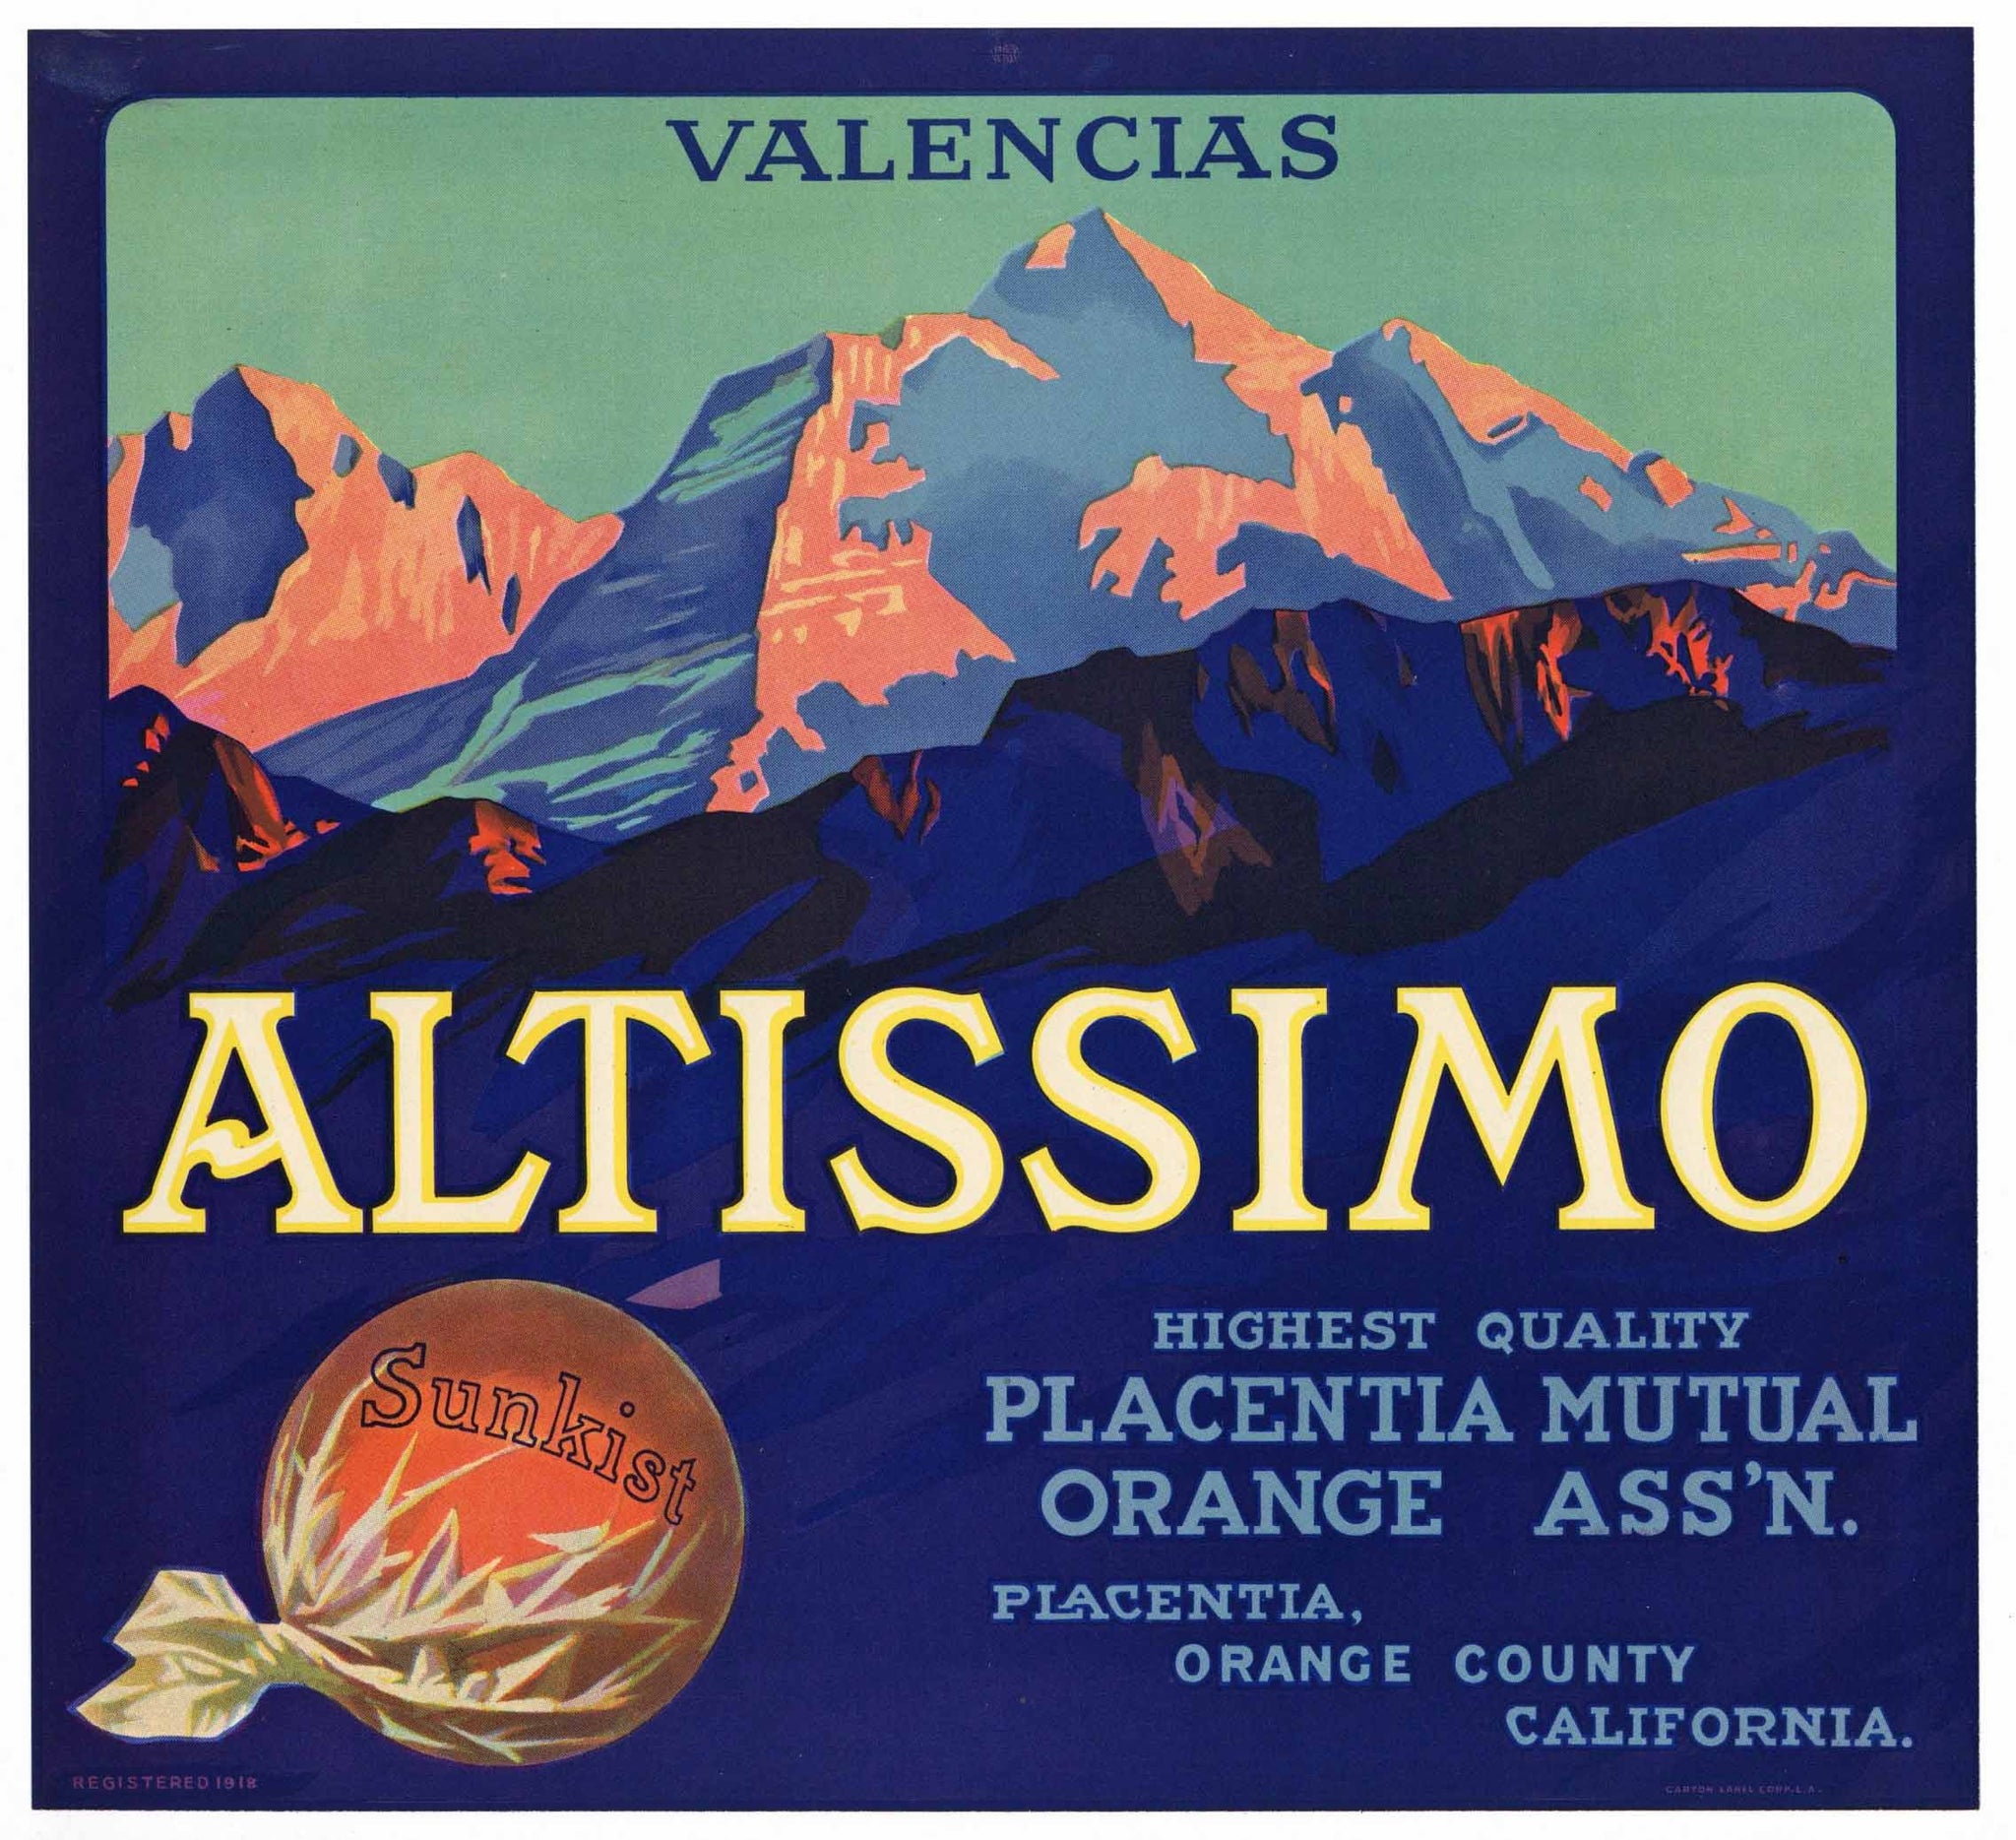 Altissimo Brand Vintage Placentia Orange Crate Label